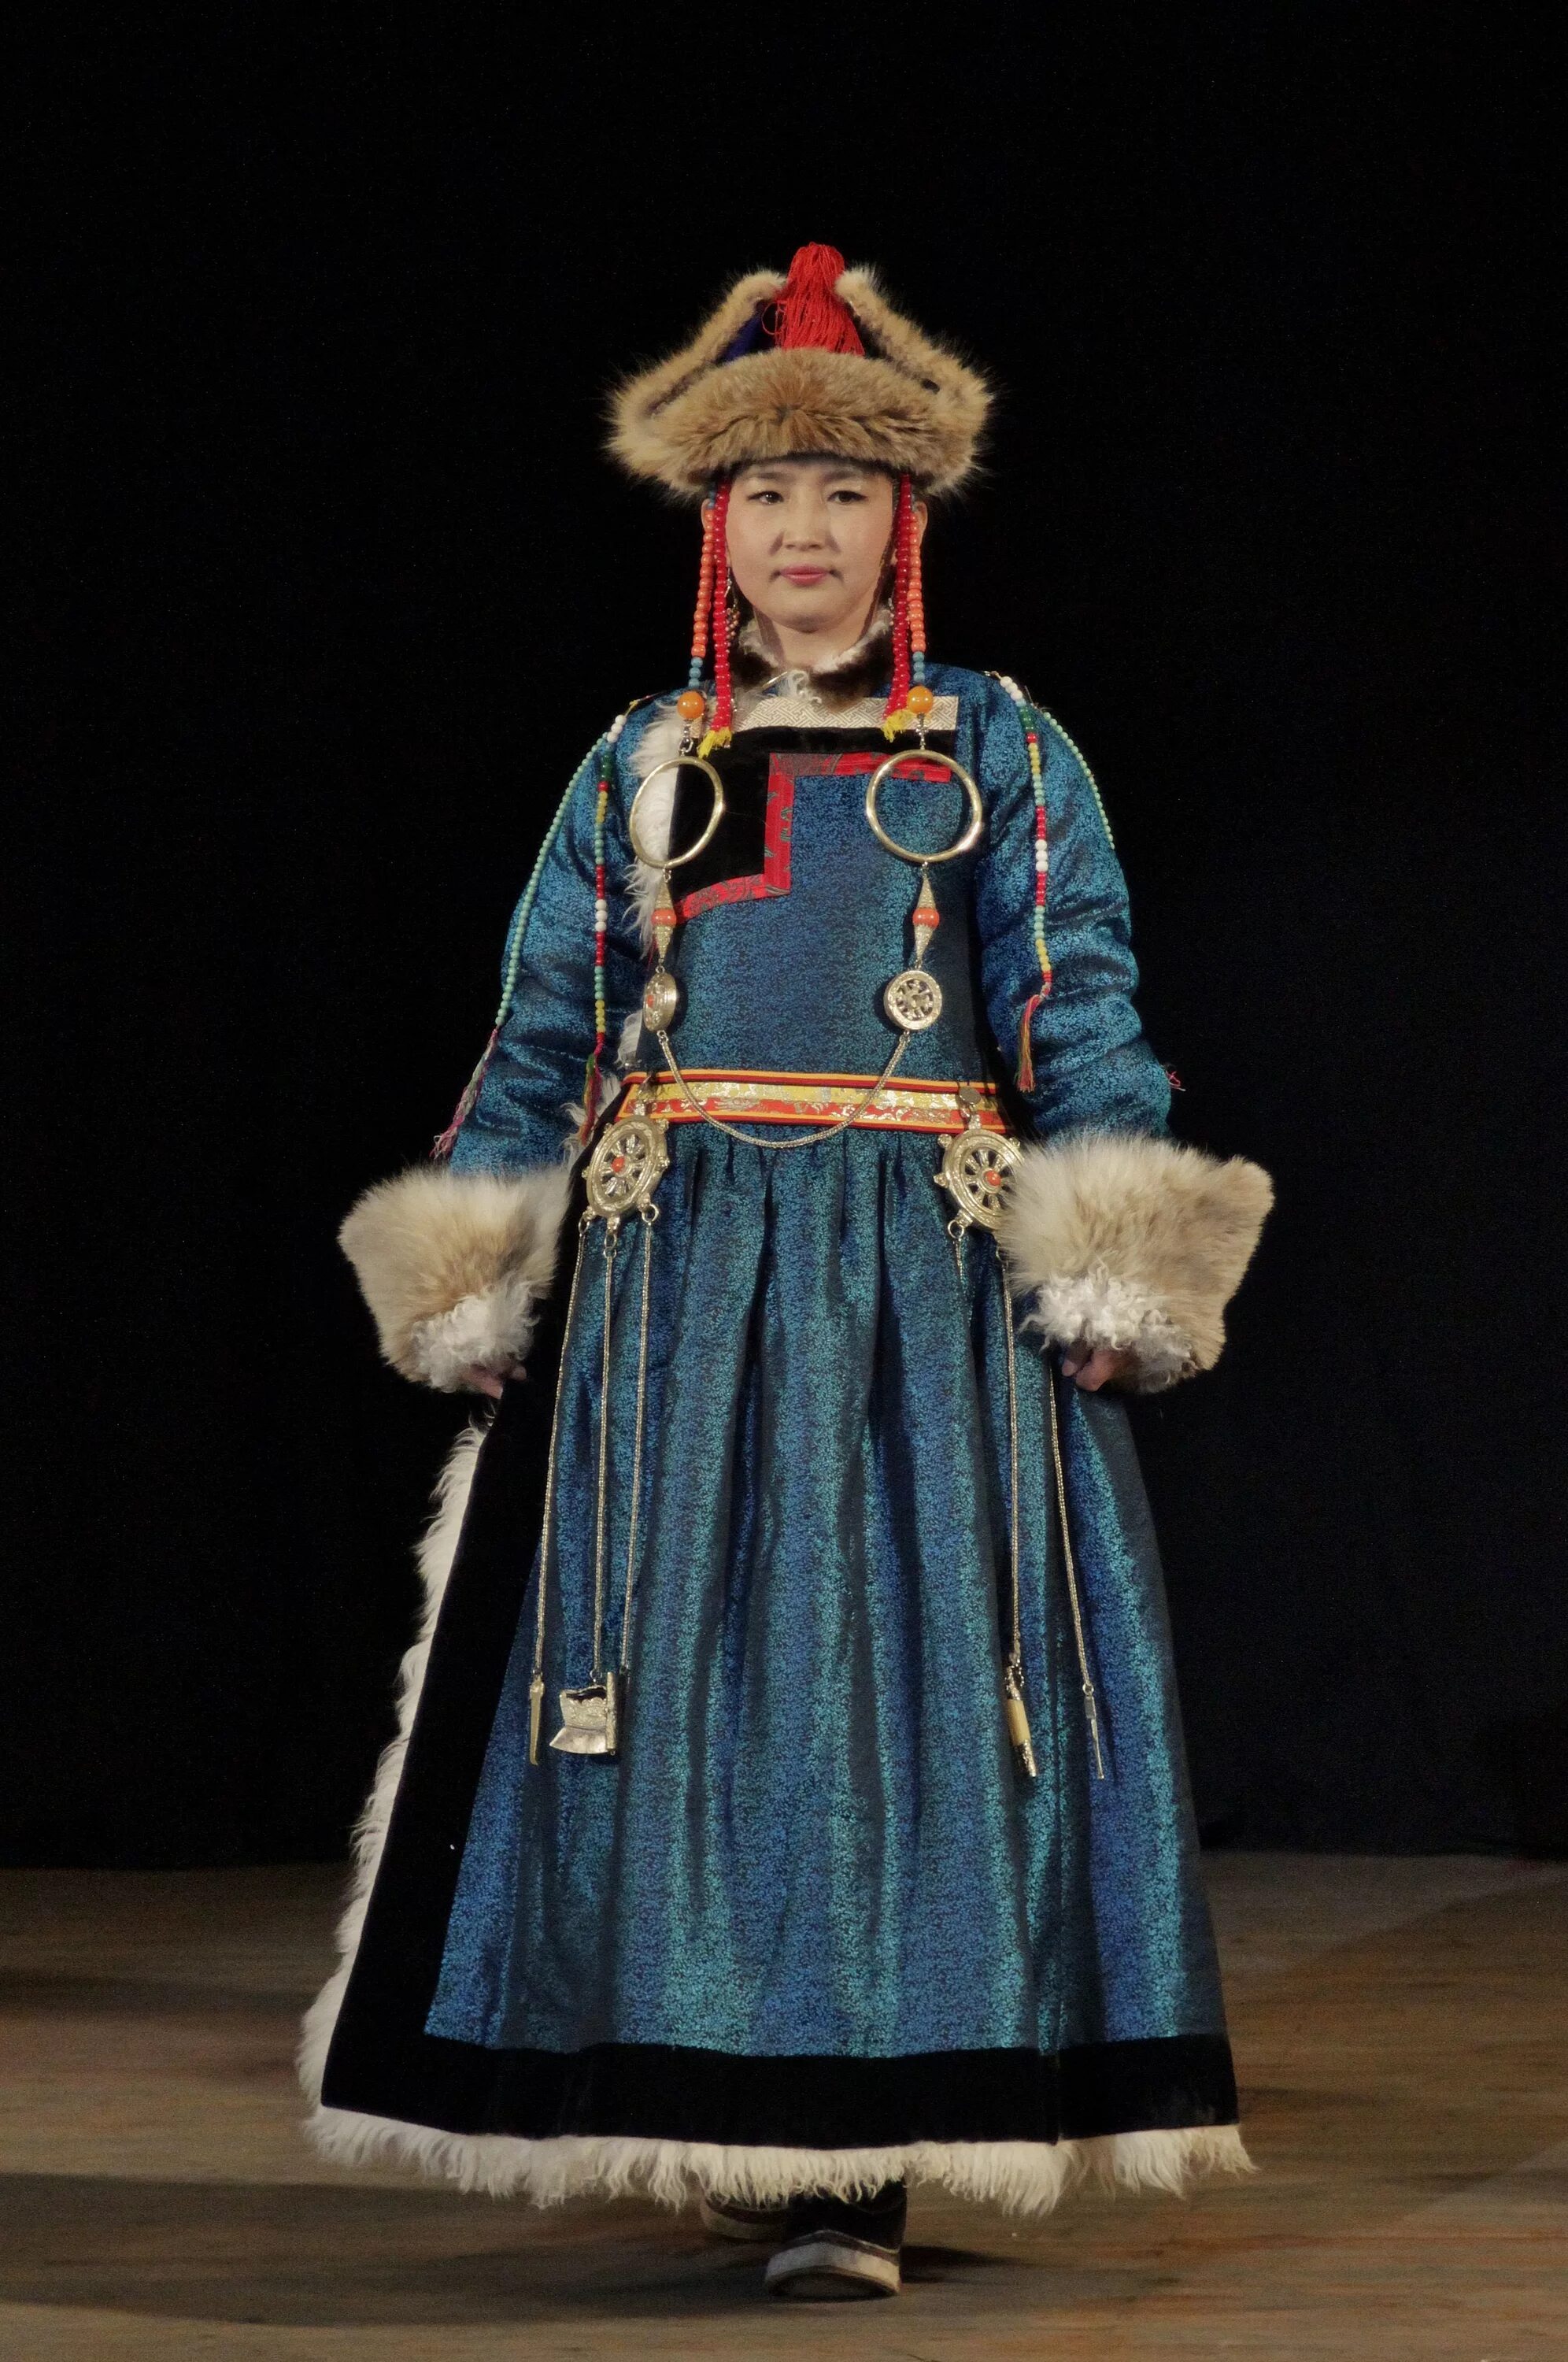 Дэгэл бурятский. Бурятский национальный костюм дэгэл. Дэли национальный костюм Монголии. Бурятский национальный костюм Хоринских бурят.